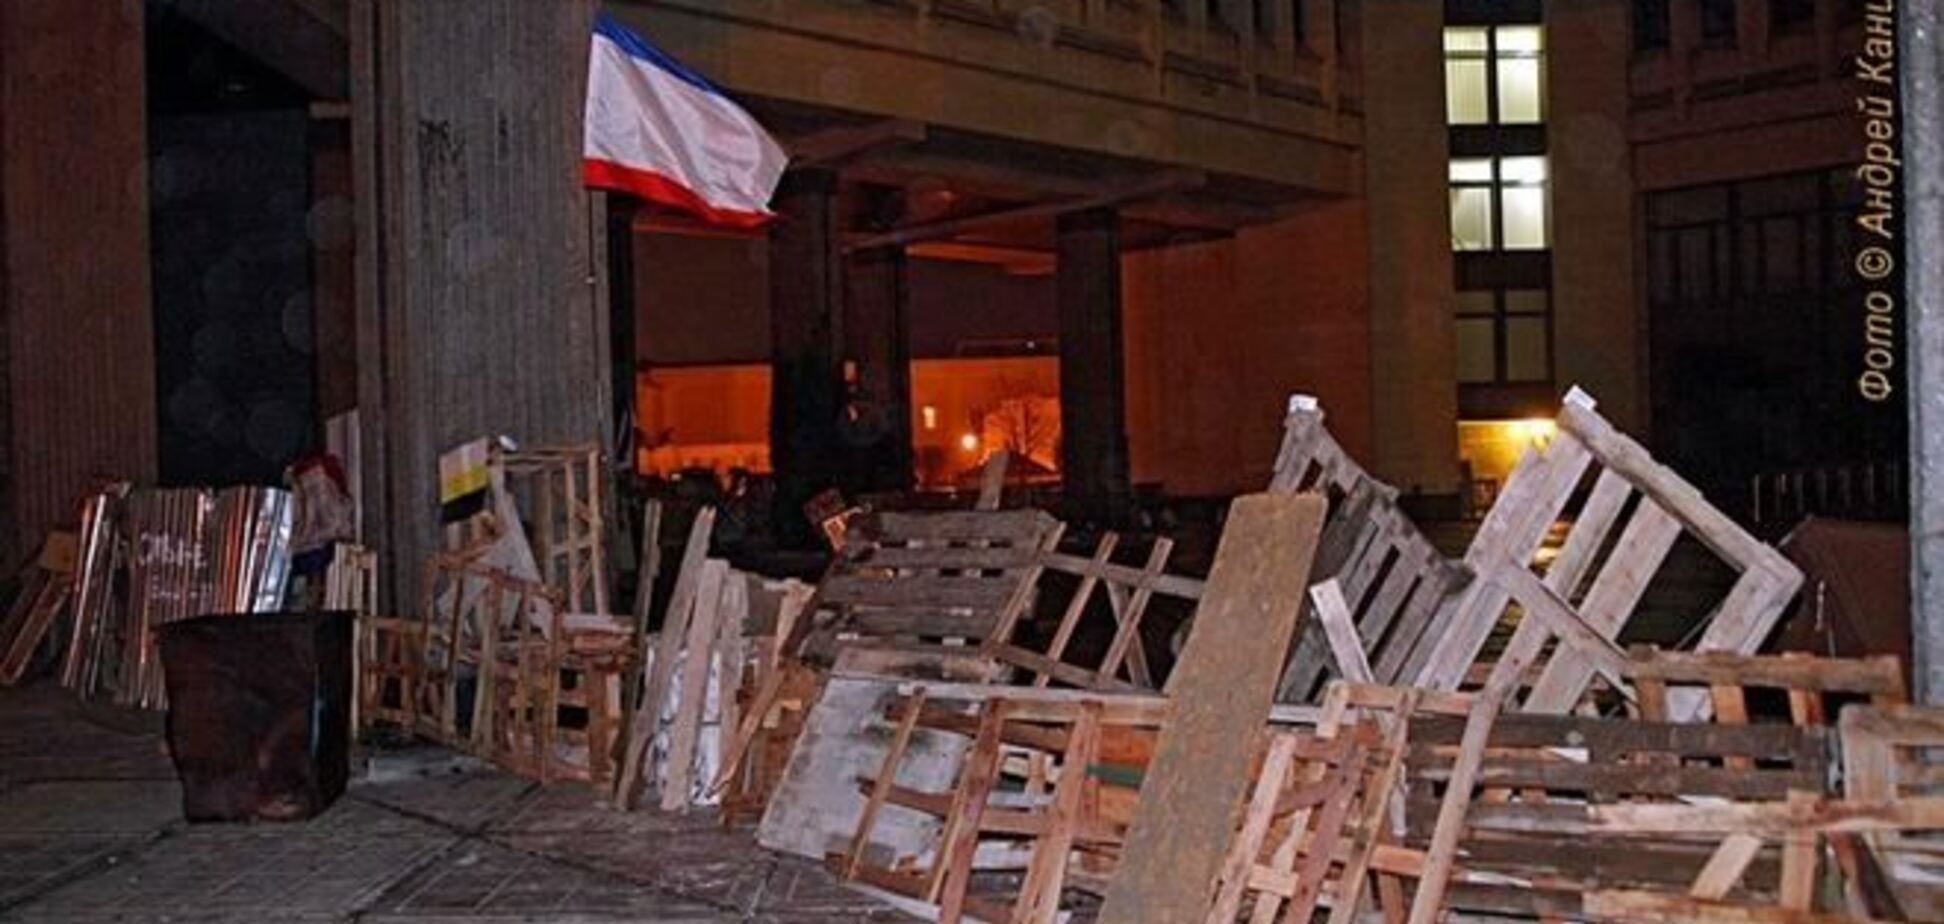 Вхід в кримський парламент огороджений барикадою з прапором АРК